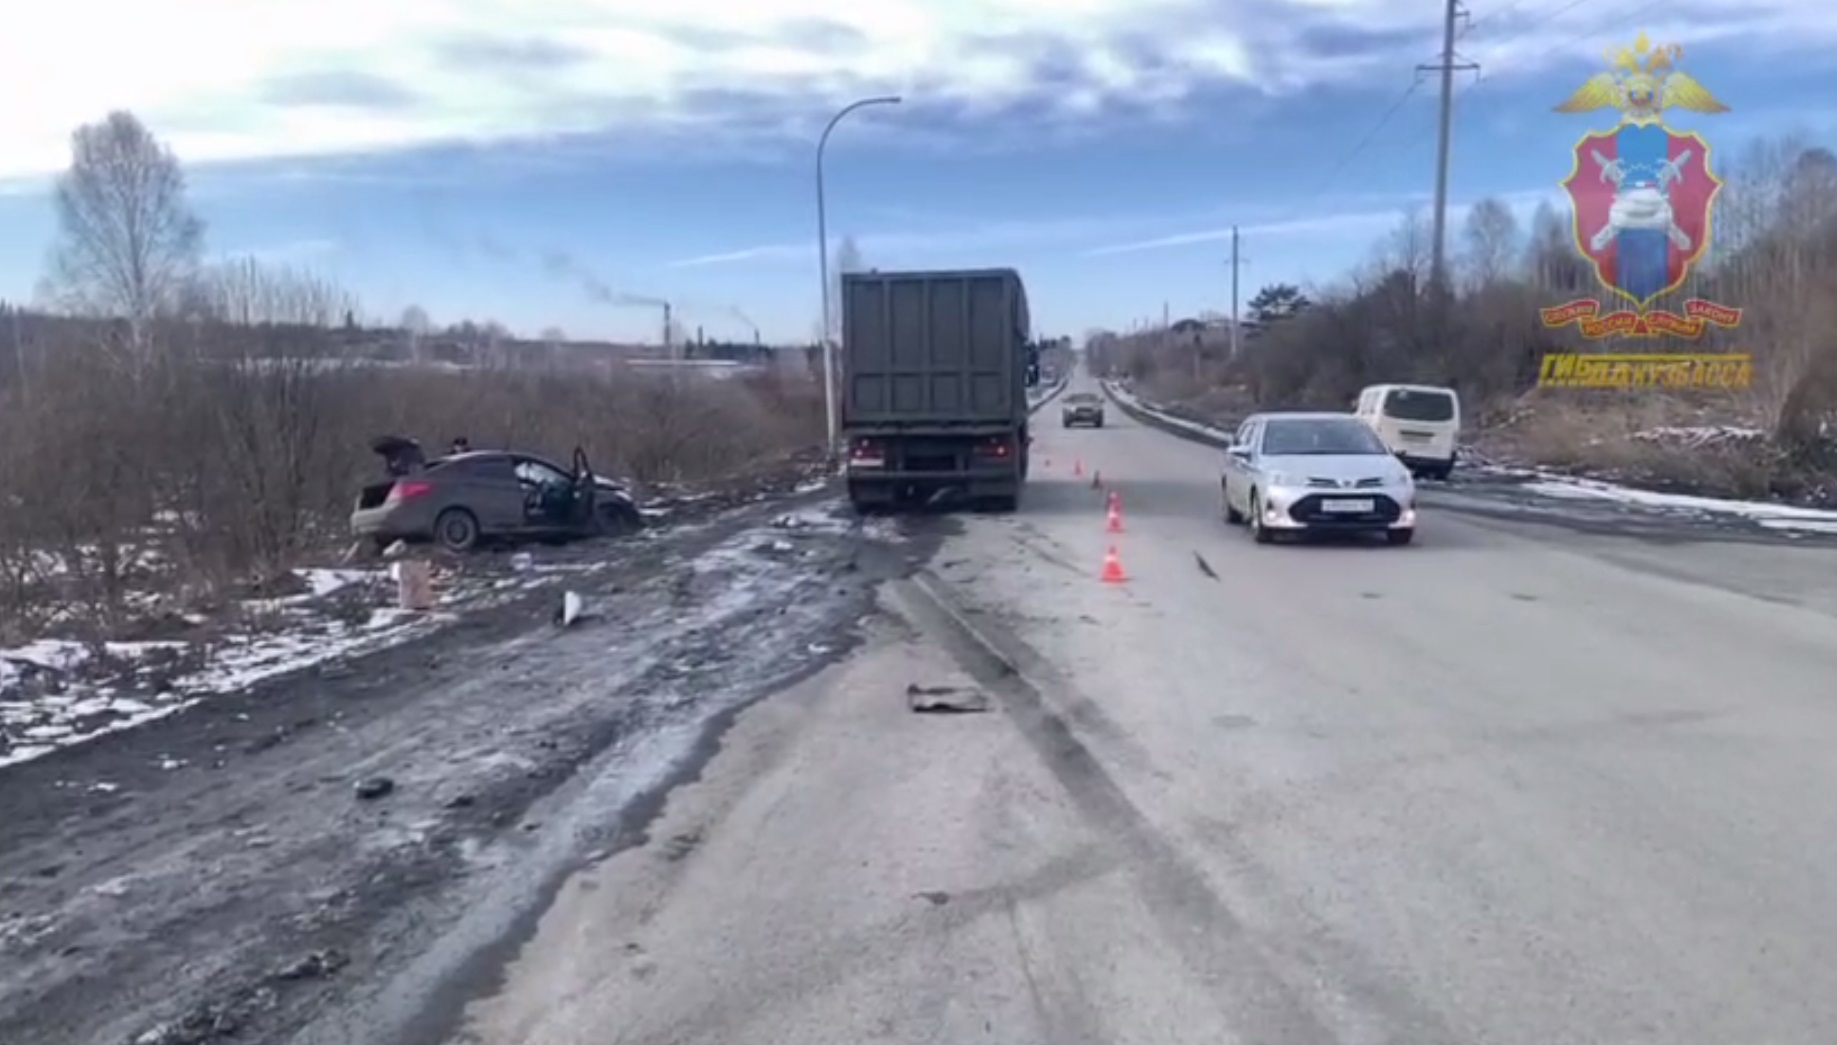 Не предоставила преимущество, выезжая со второстепенной дороги: в ГИБДД рассказали подробности страшной аварии в Кузбассе